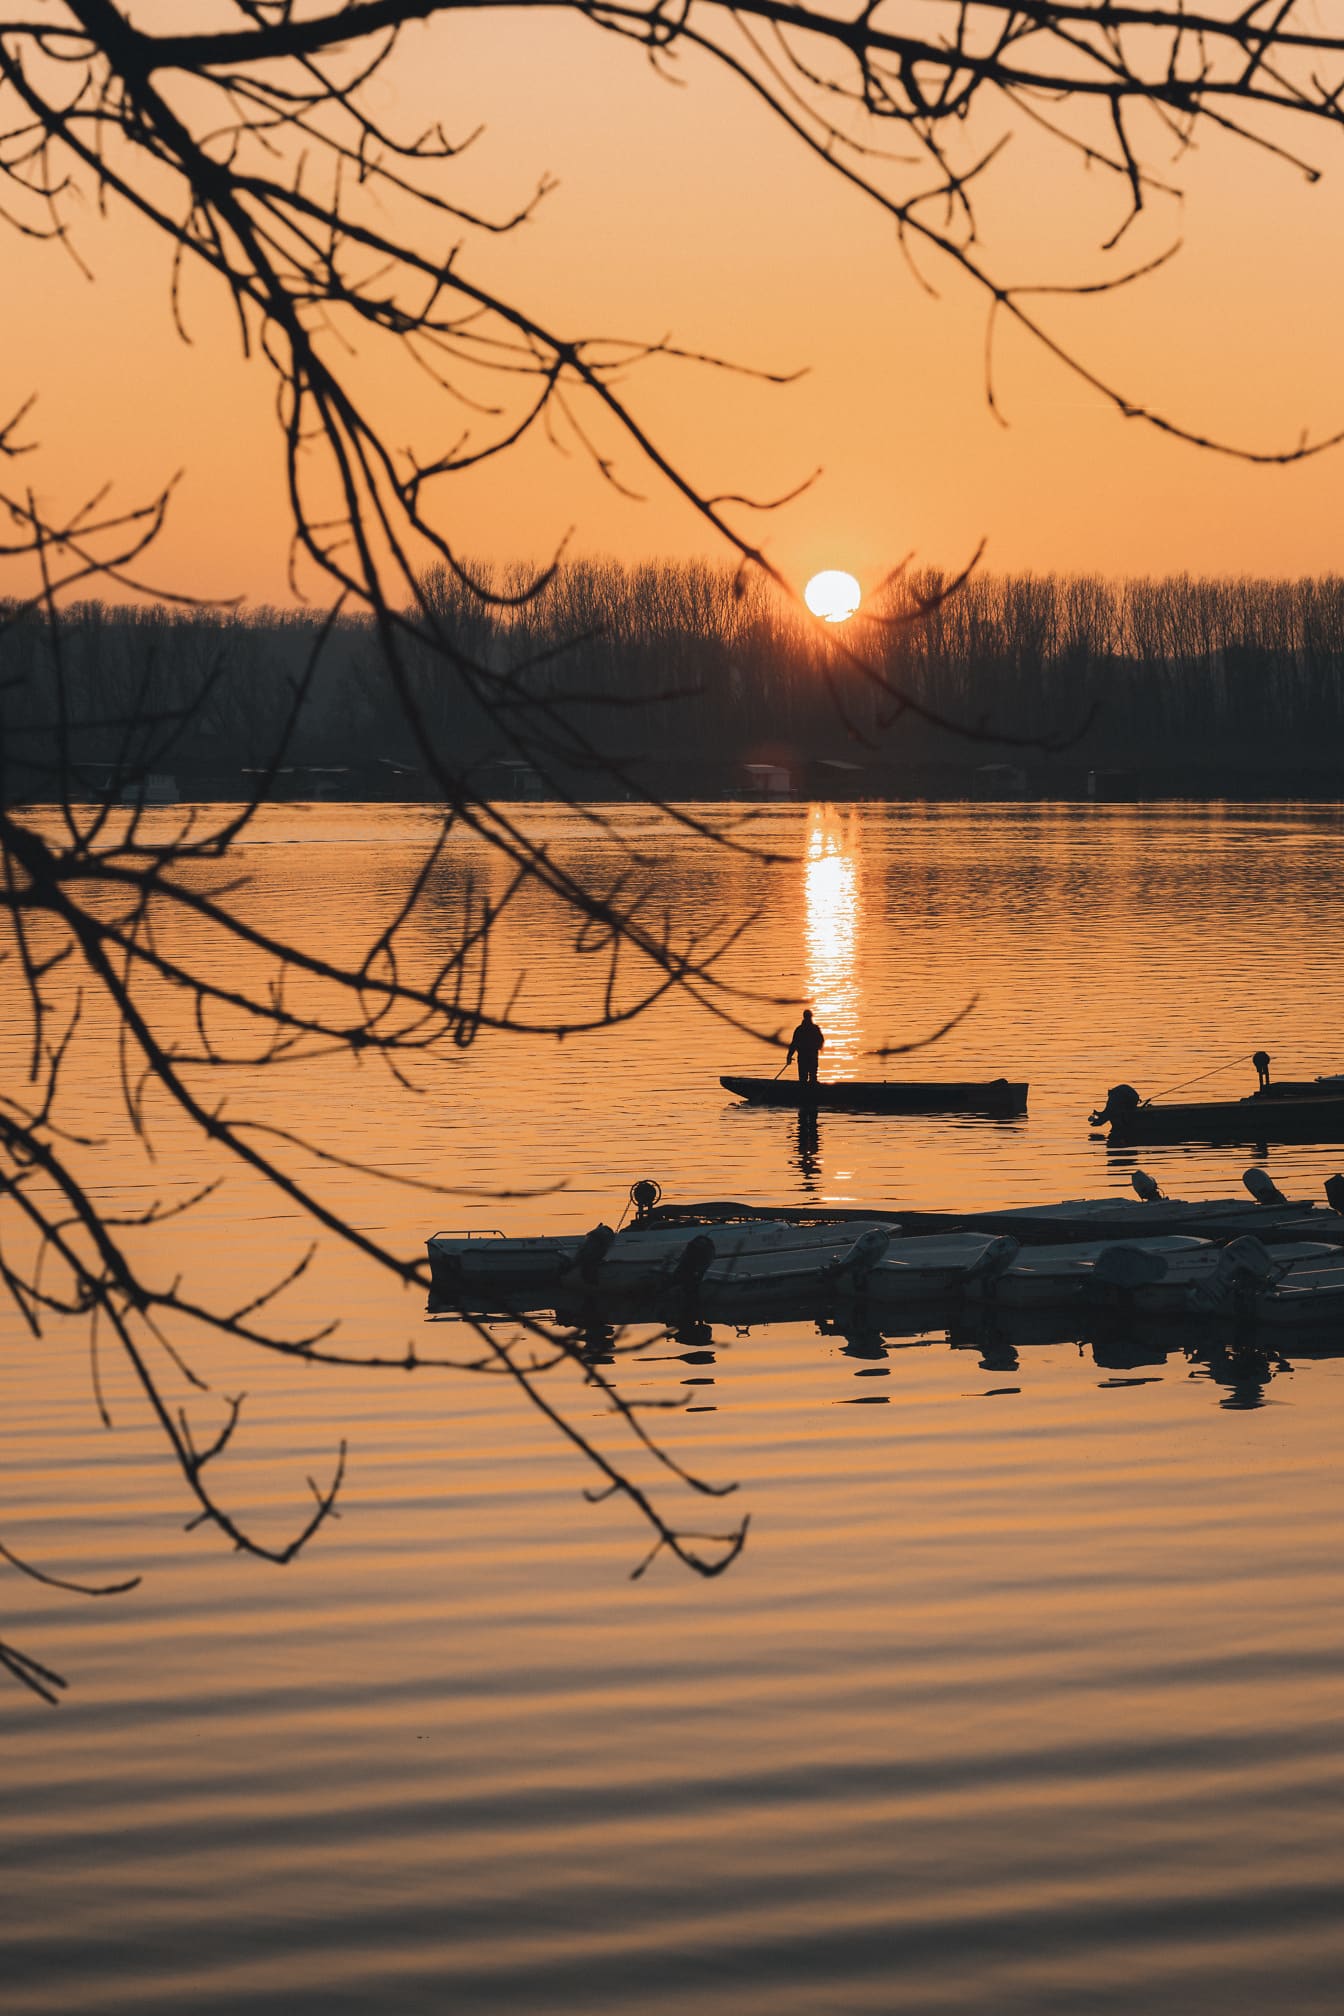 渔民在渔船上的剪影在河港的日落